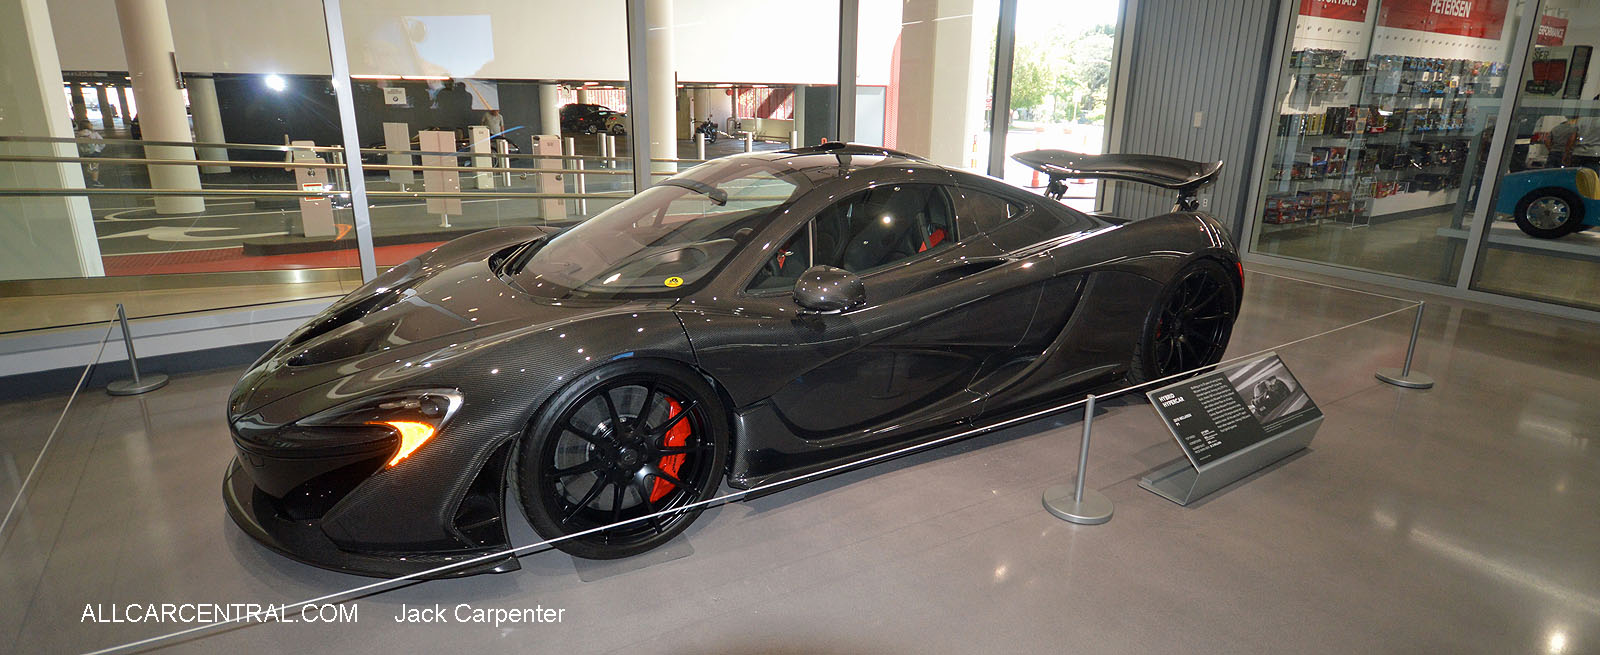   McLaren P1 2015 Petersen Automotive Museum 
2016